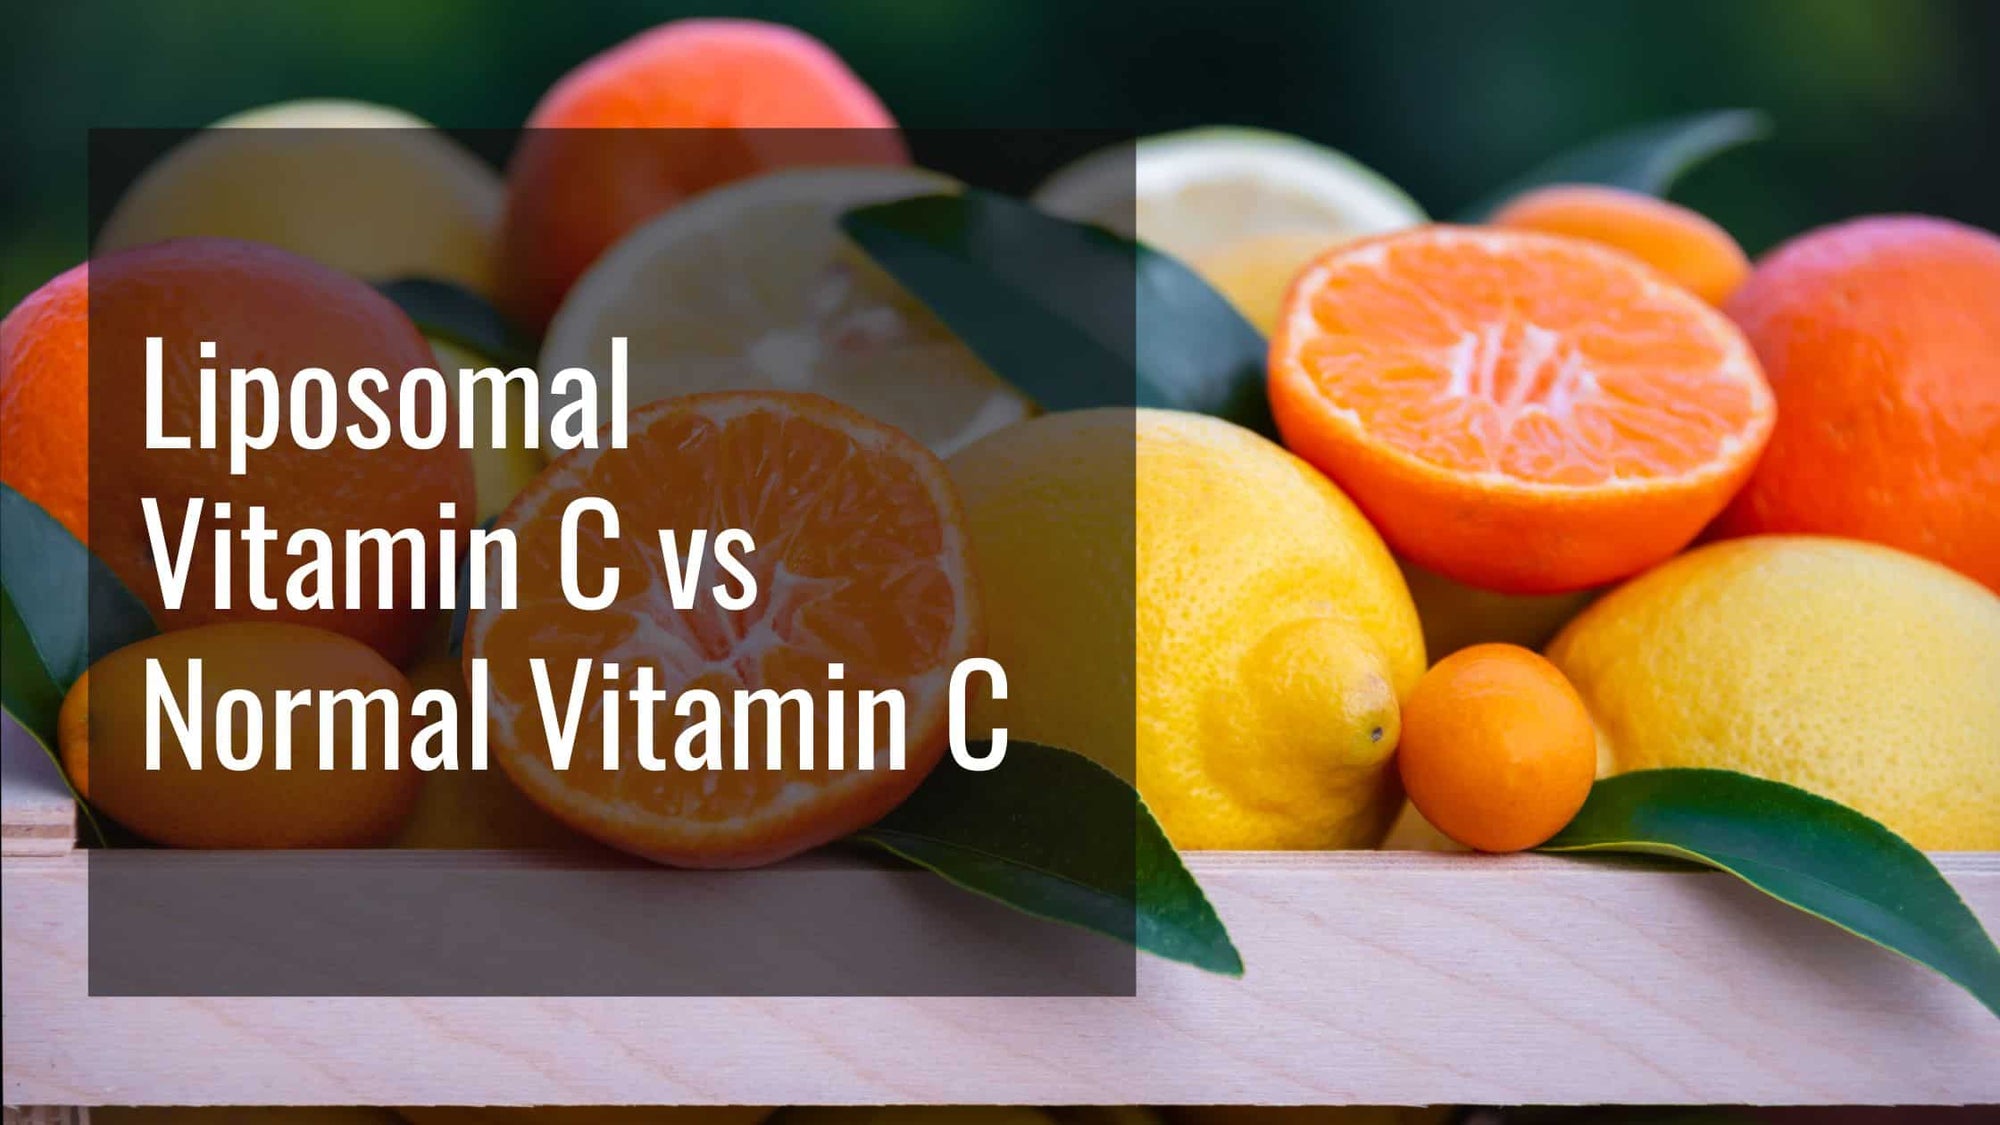 Liposomal Vitamin C vs. Regular Vitamin C